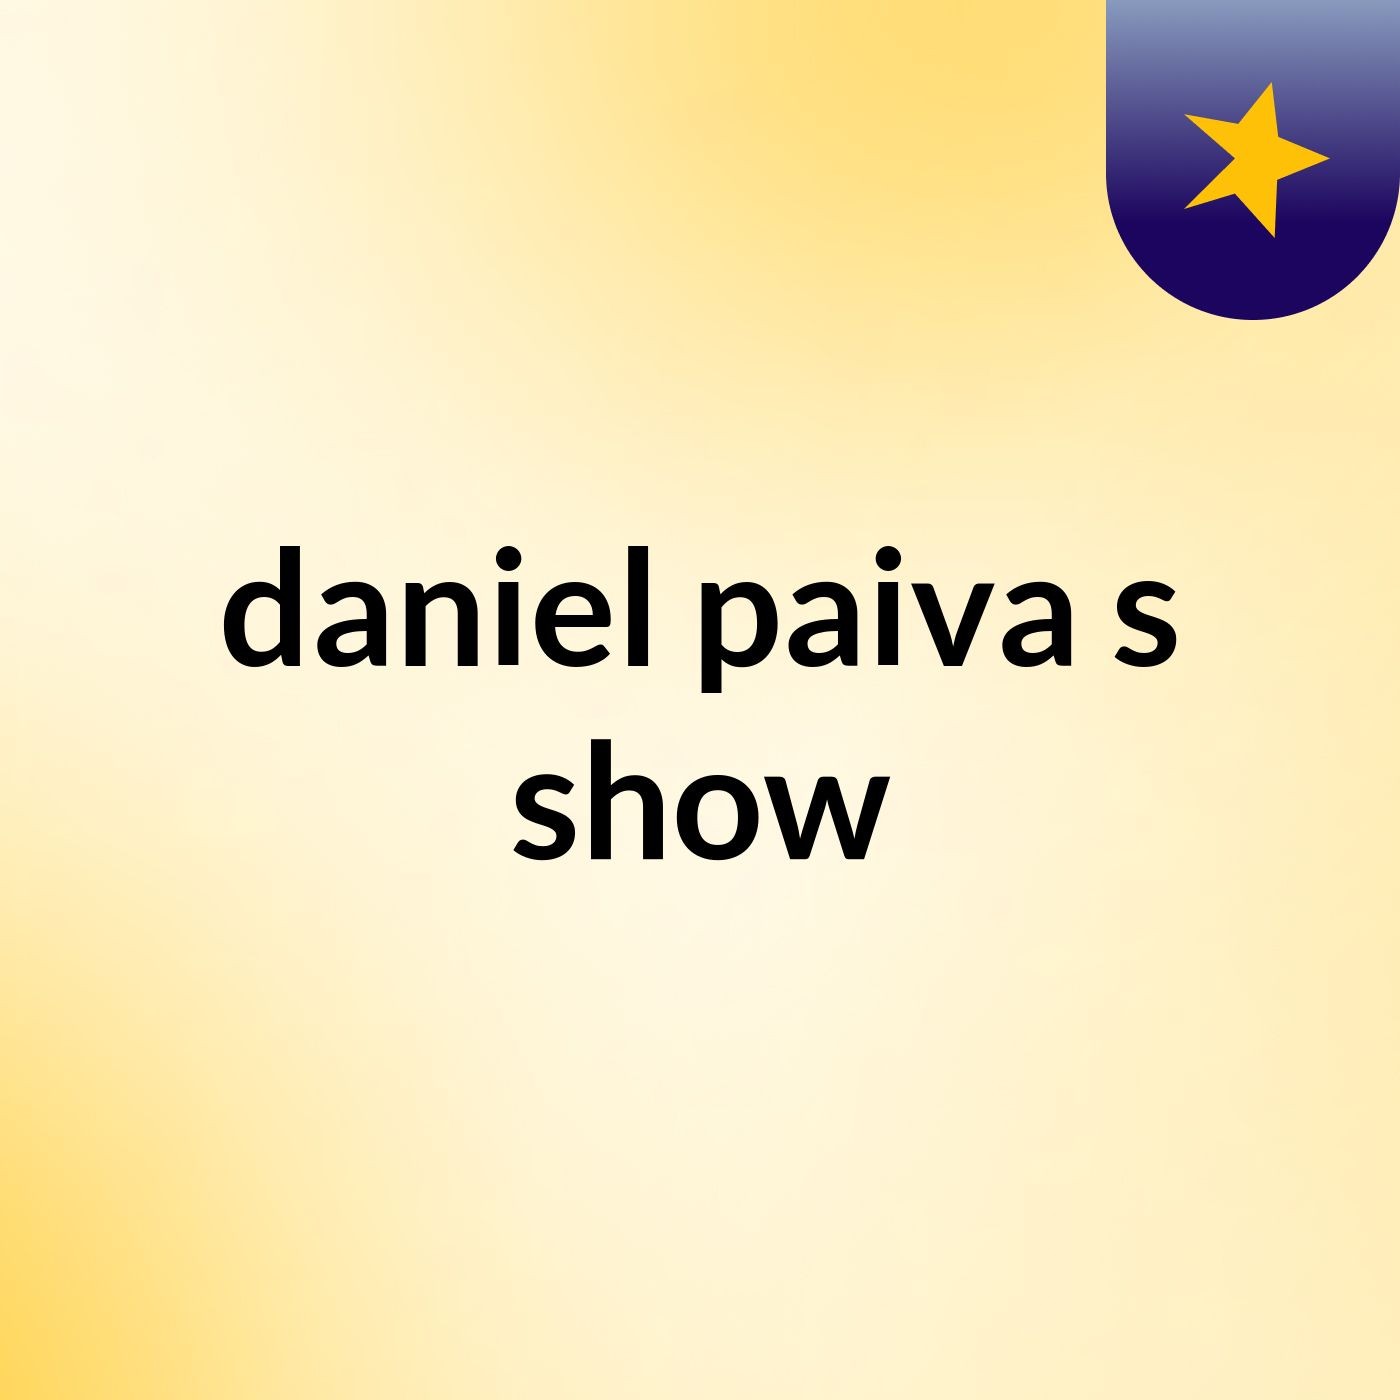 daniel paiva's show